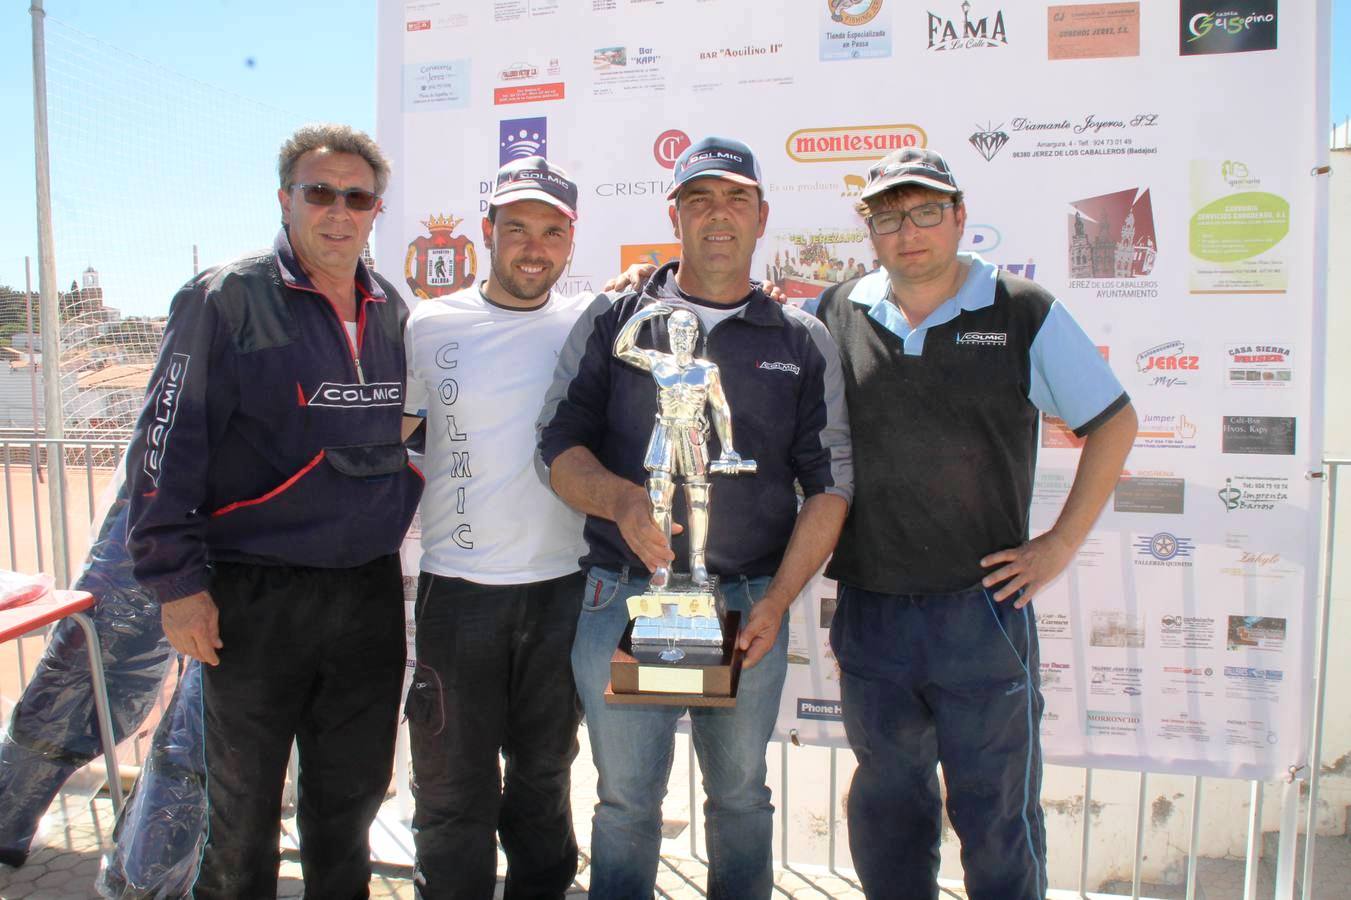 La Agrupación de pescadores de Badajoz, con su premio, junto al presidente de la Sociedad Balboa.P.D.